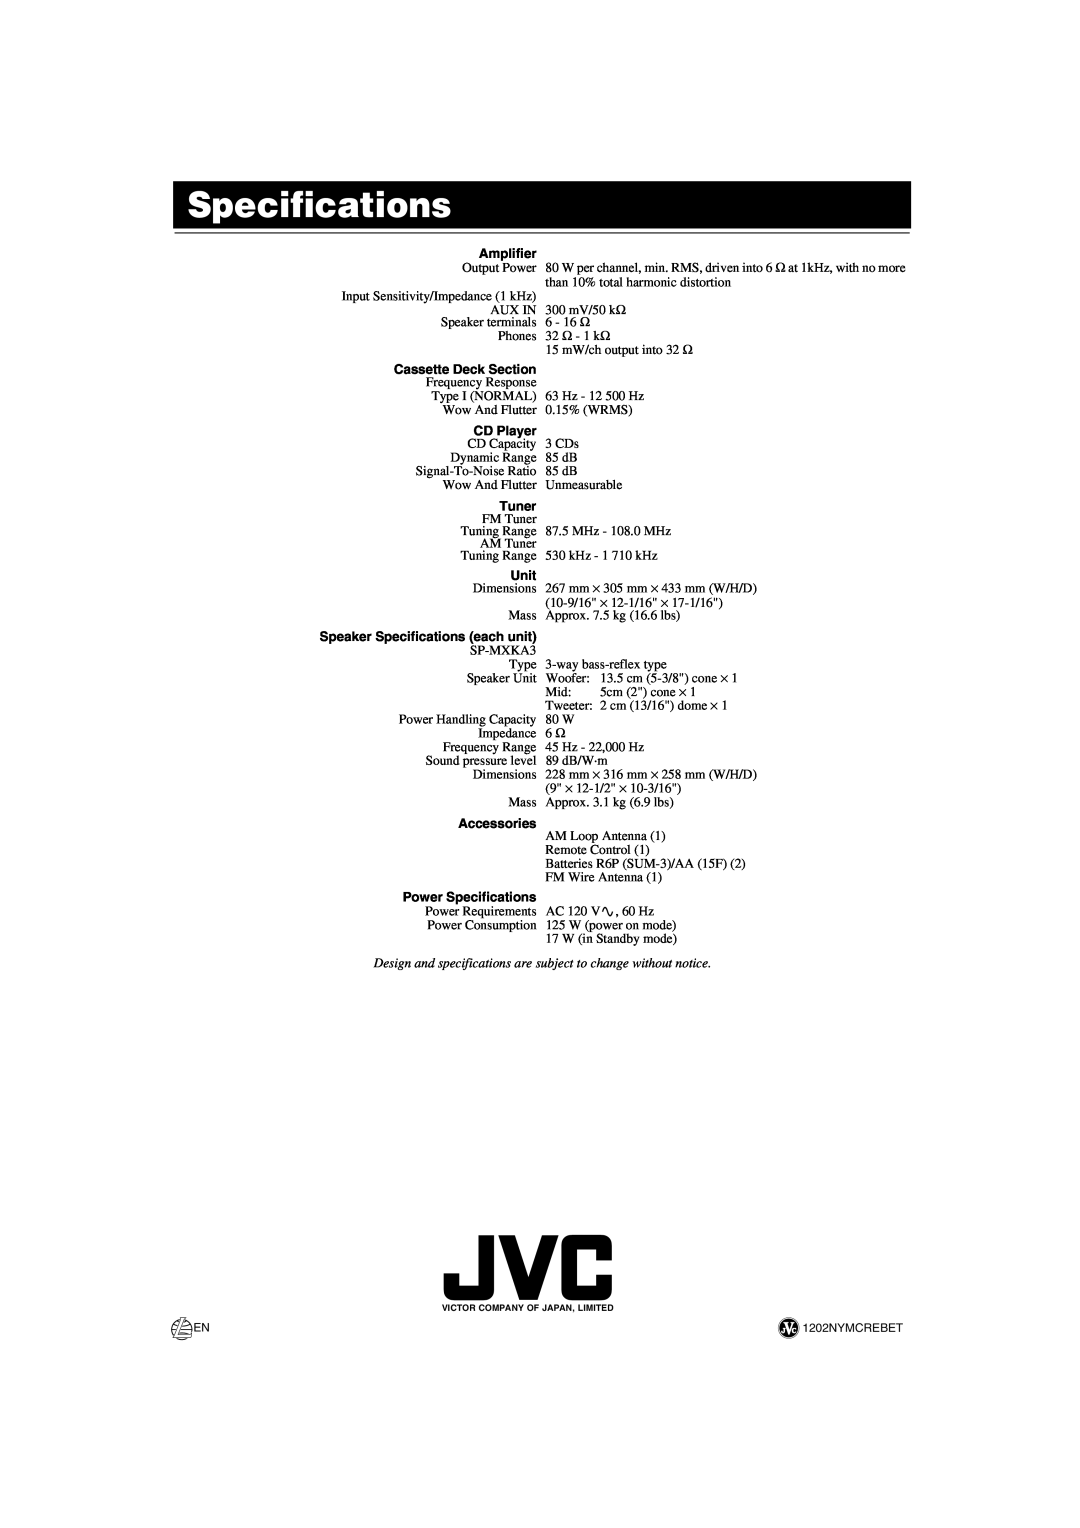 JVC SP-MXKA3 Amplifier, Cassette Deck Section, CD Player, Tuner, Unit, Speaker Specifications each unit, Accessories 